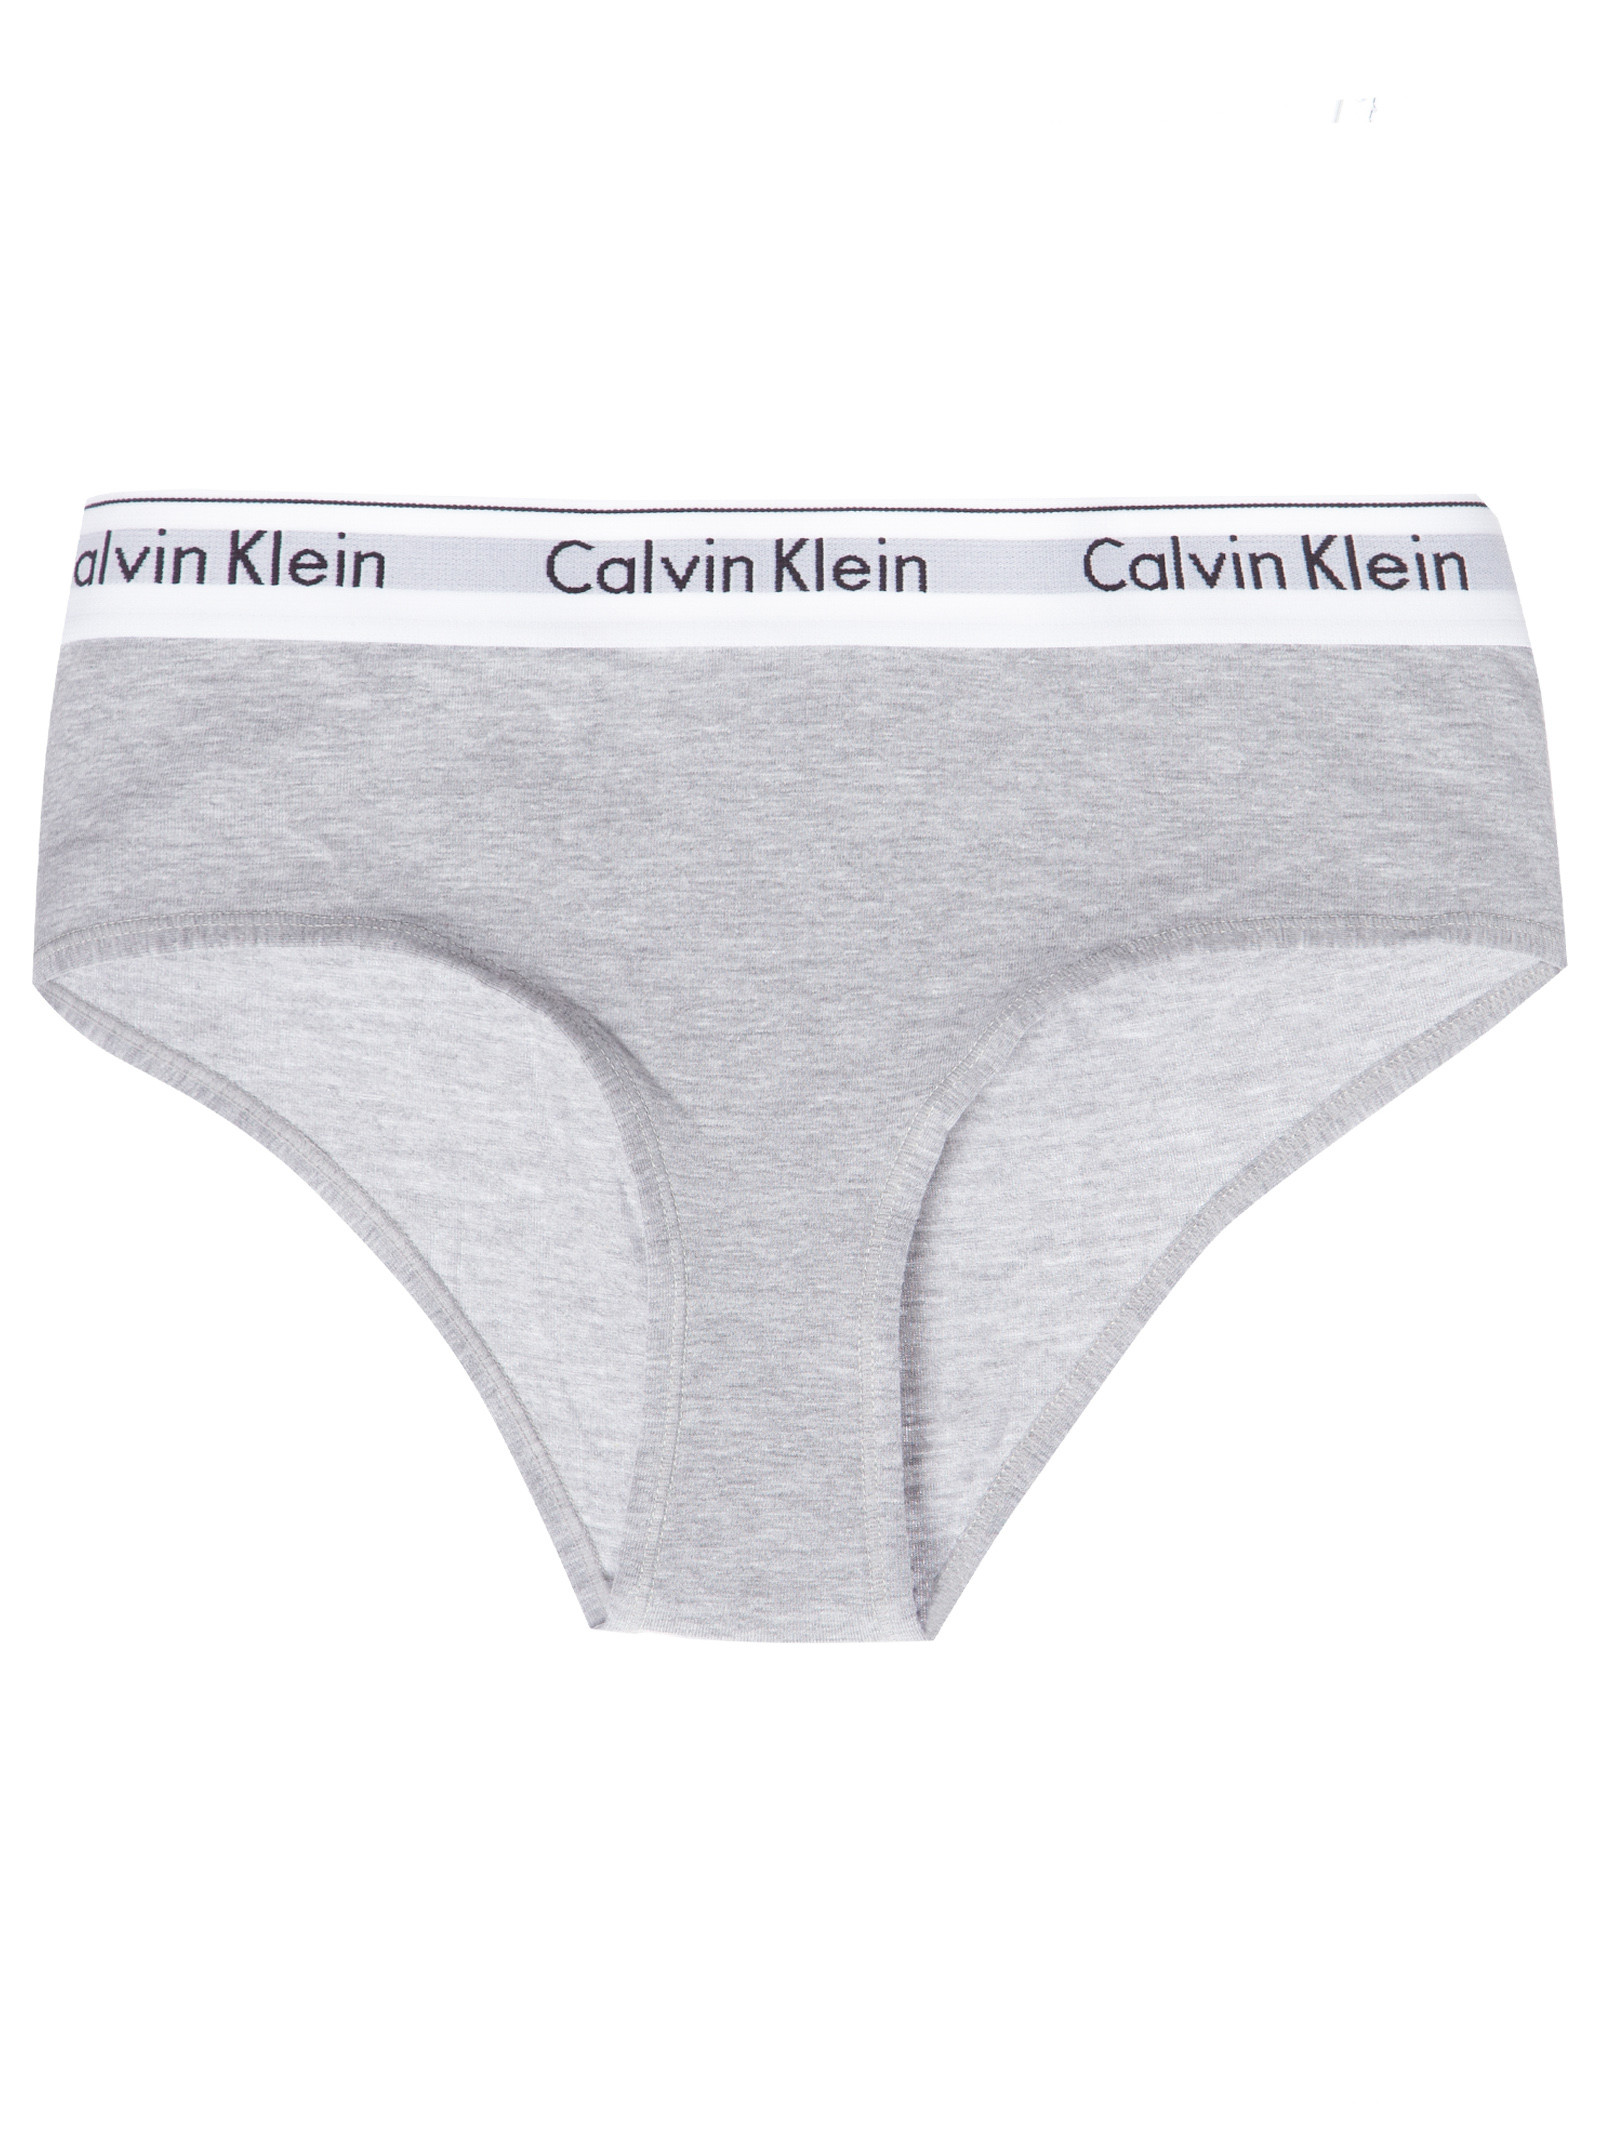 Top de algodão Modern Cotton com cós da Calvin Klein, Sutiãs de mulher